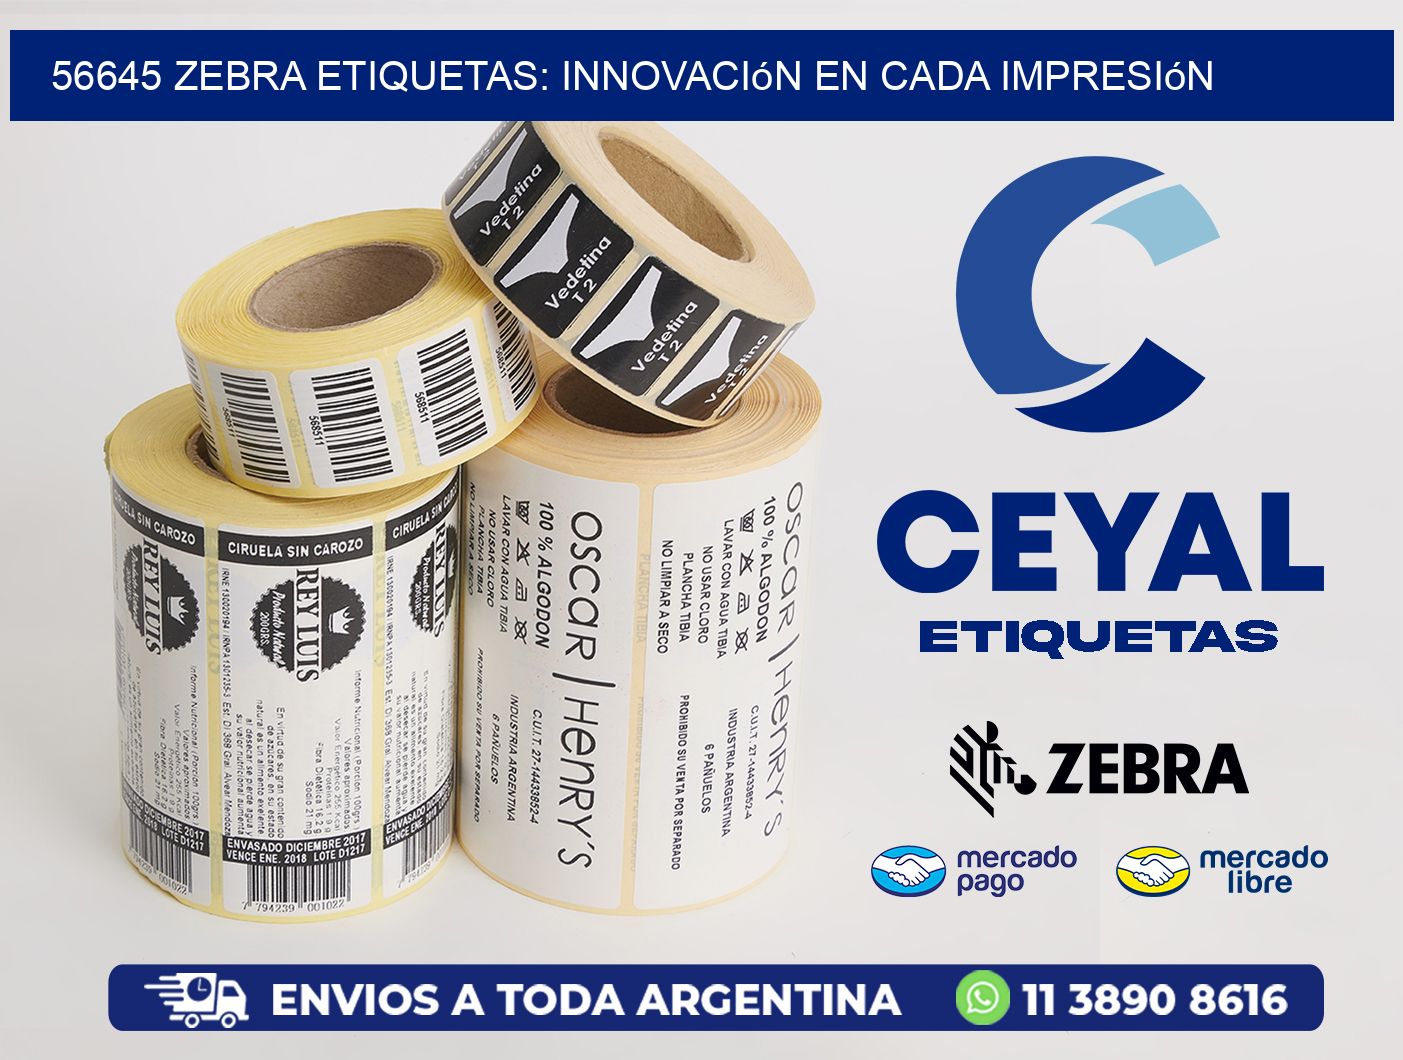 56645 Zebra Etiquetas: Innovación en Cada Impresión